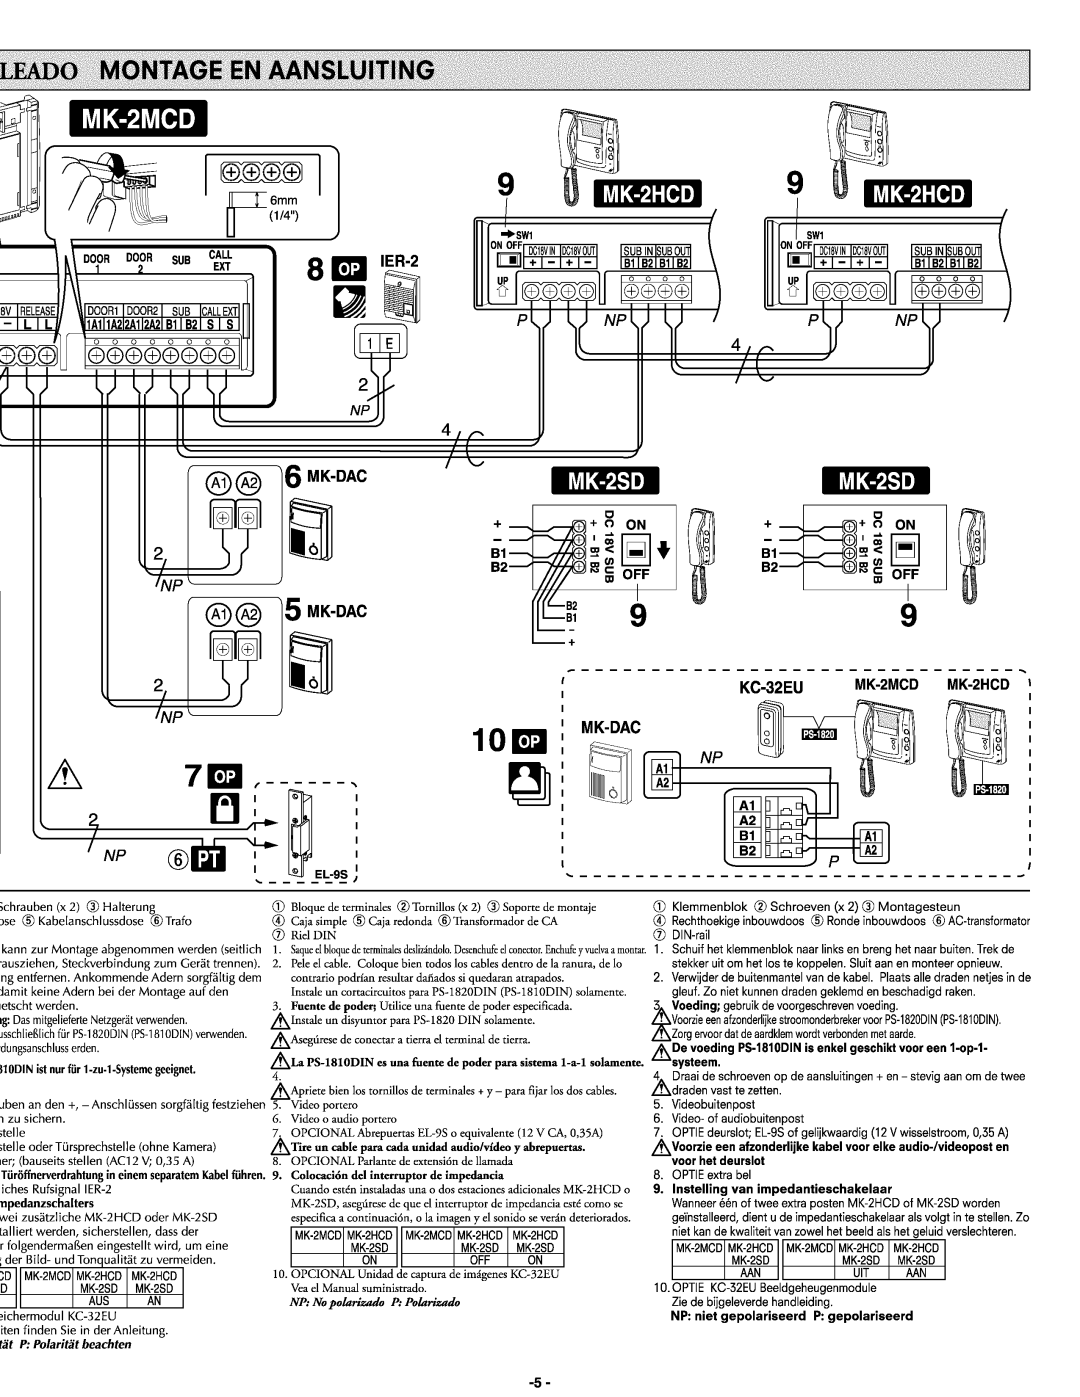 Aiphone MK-2HCD, Mk-2mcd manual 